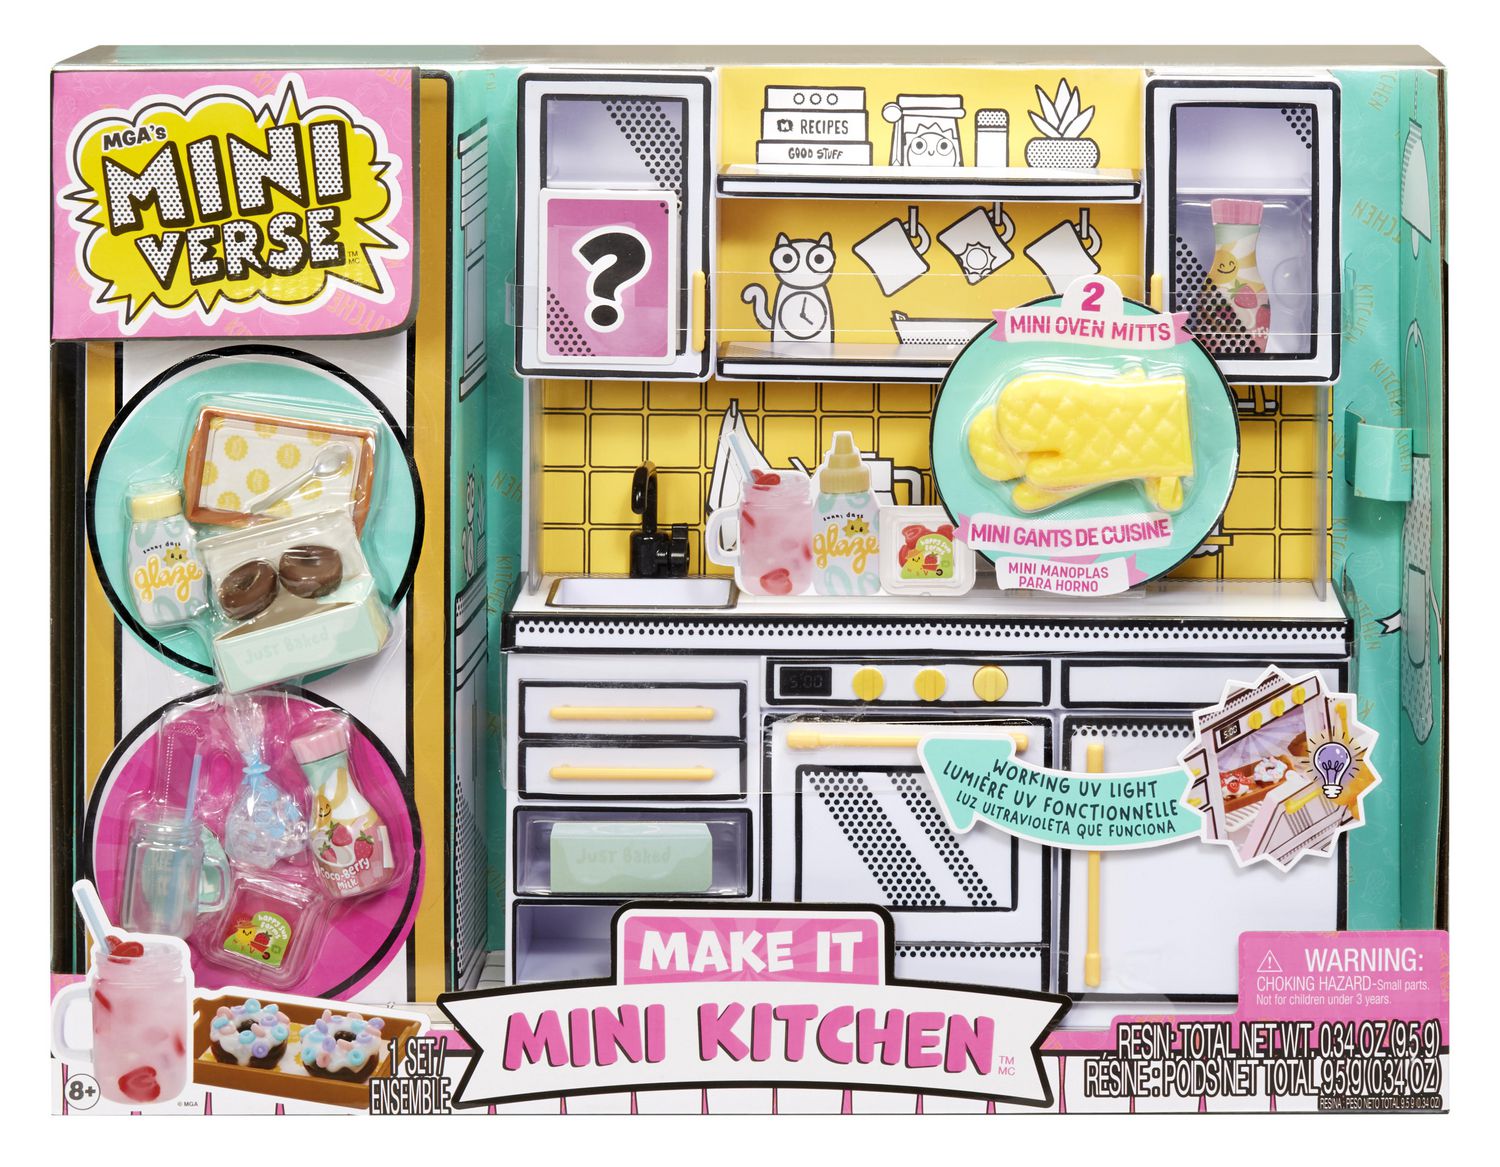 MGA Miniverse Make It Mini Food DINER SERIES 2 Craft Kits - Pick and  choose!!